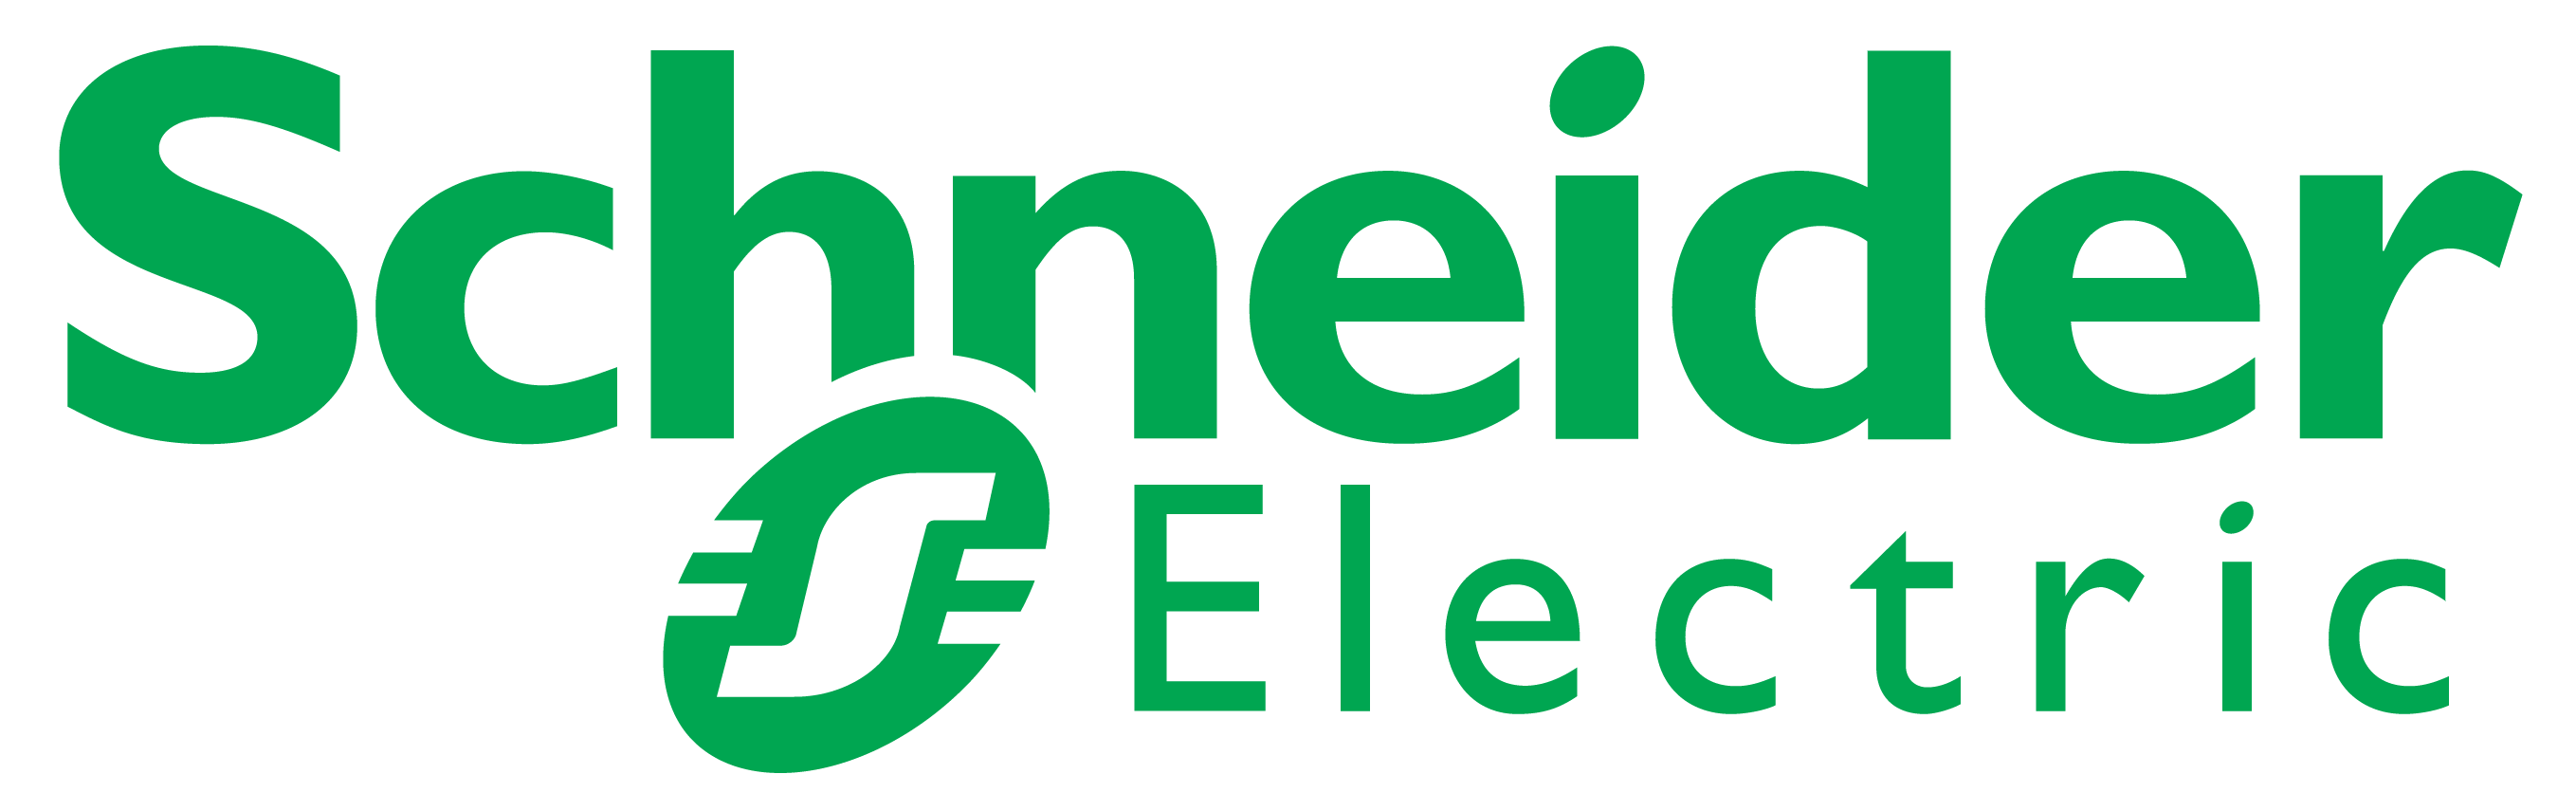 Schneider Electric - logo